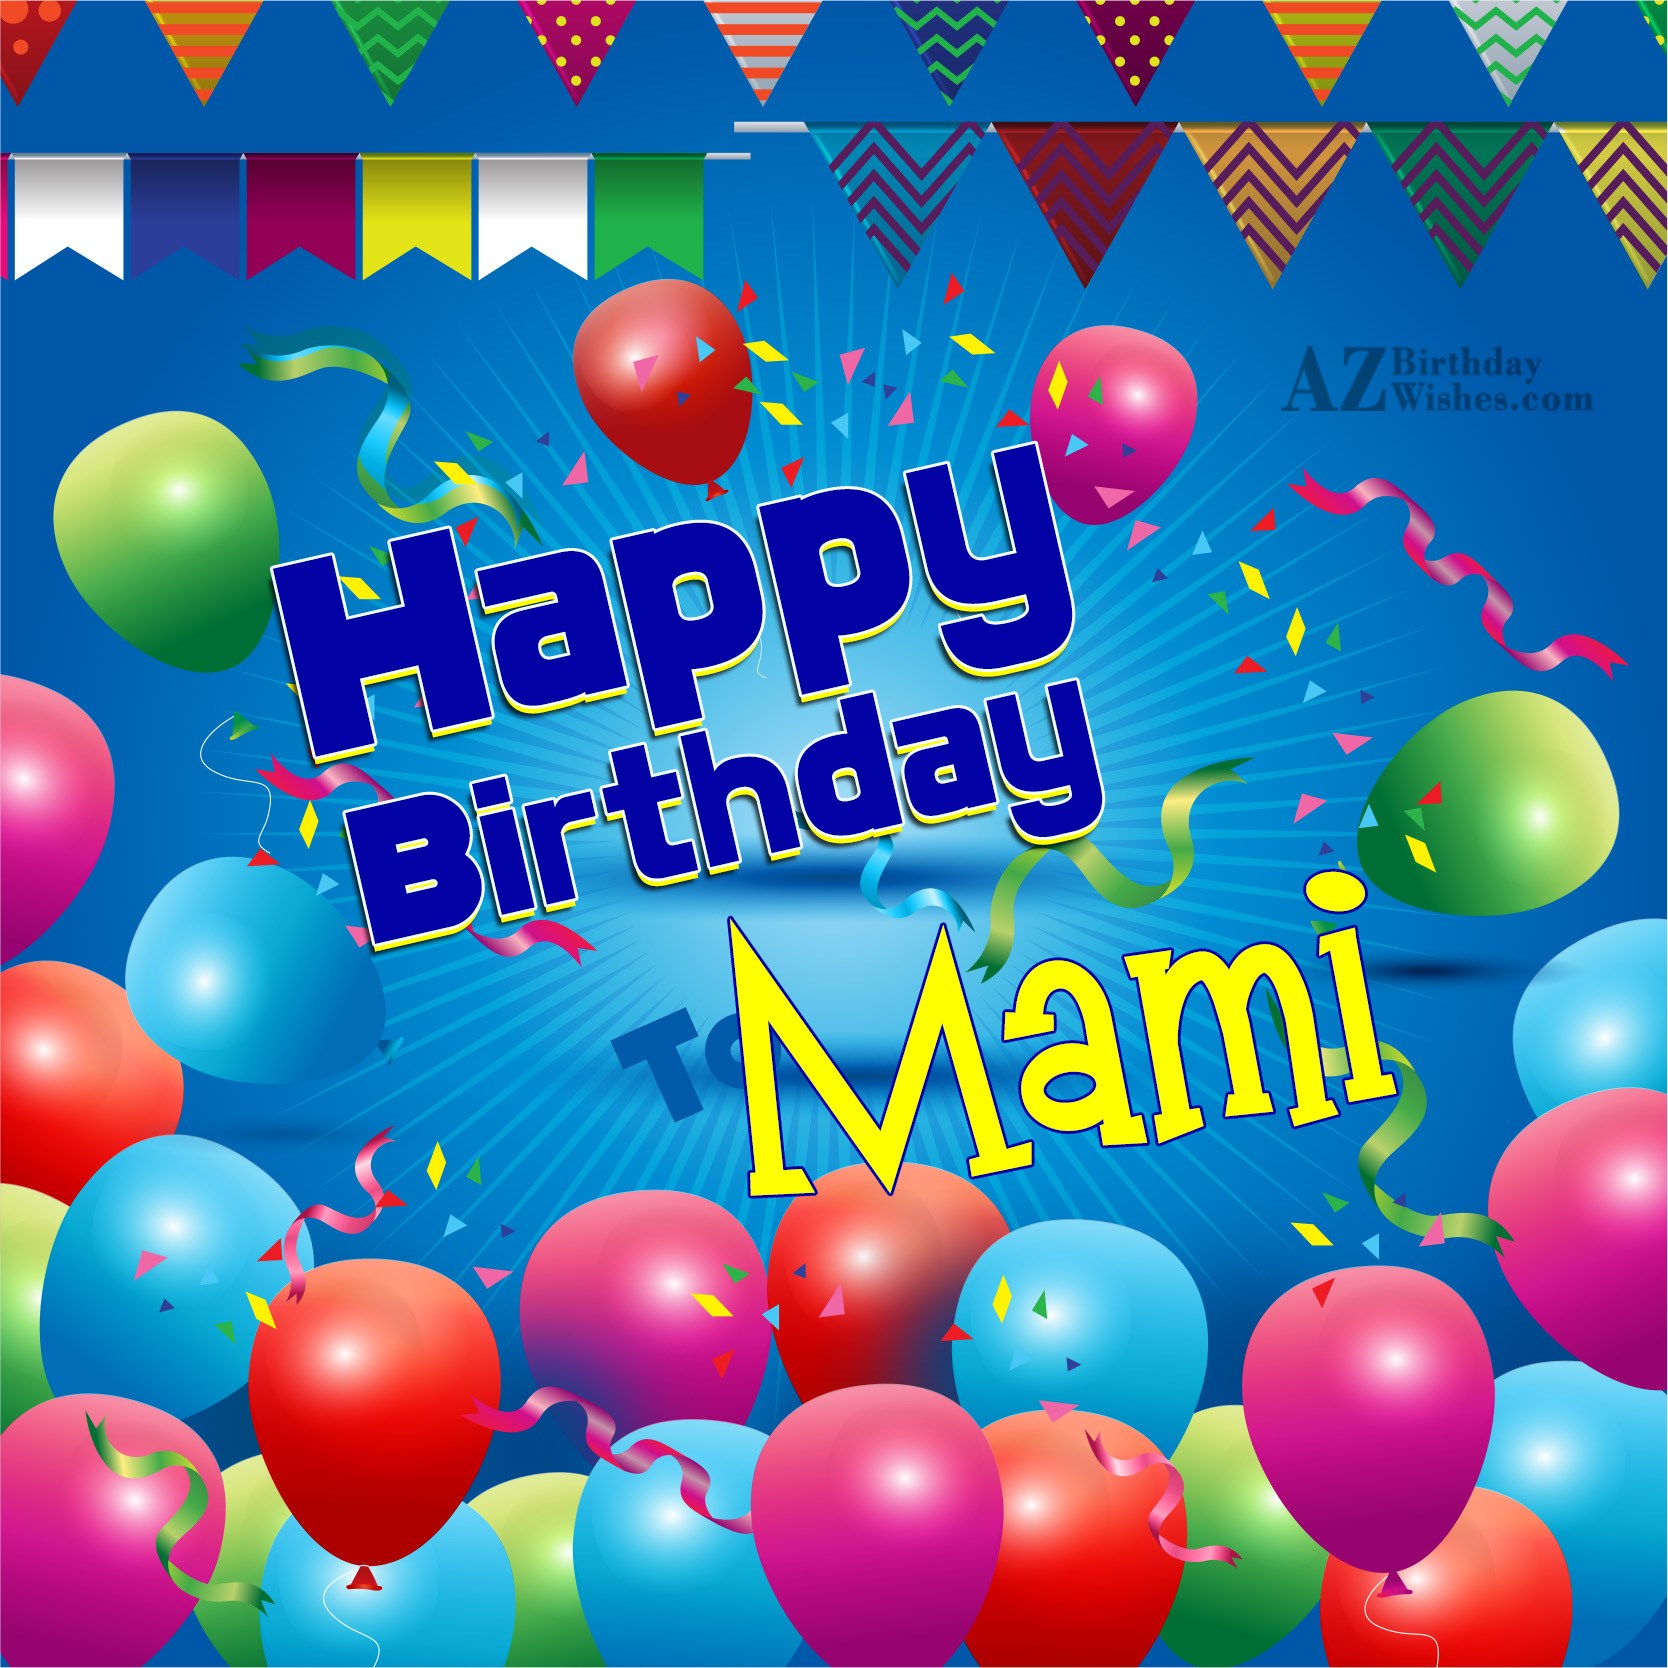 Happy birthday mamiji